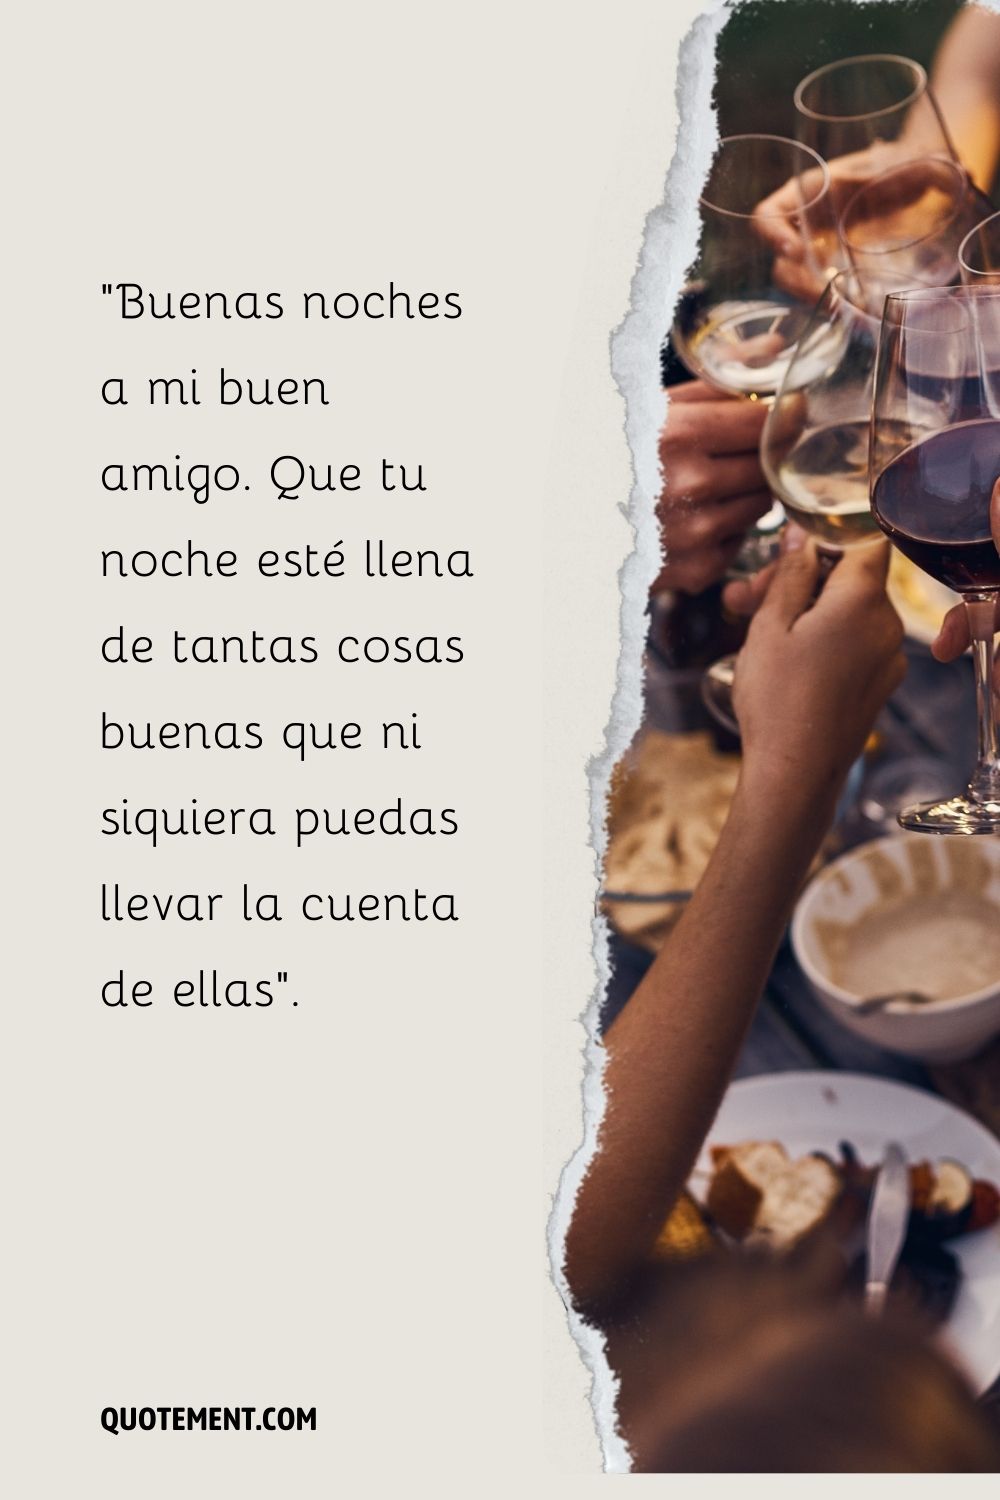 Un grupo de personas chocando copas de vino sobre una mesa de comedor representa el mejor mensaje de buenas noches para los amigos